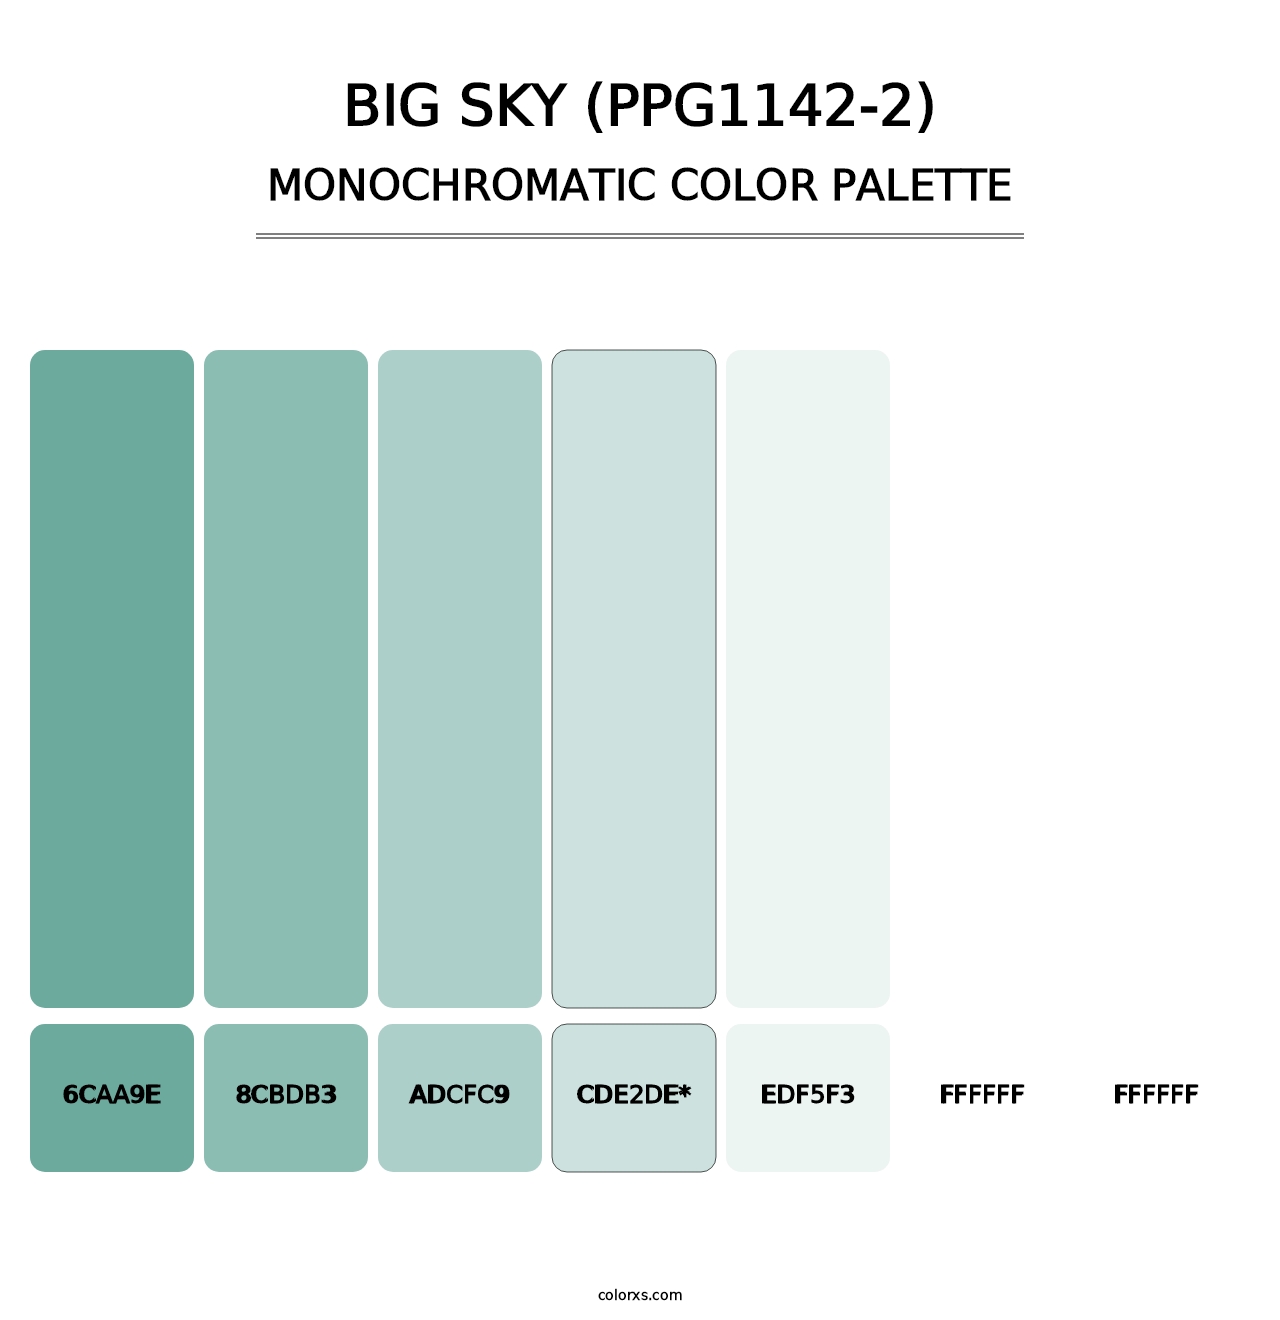 Big Sky (PPG1142-2) - Monochromatic Color Palette